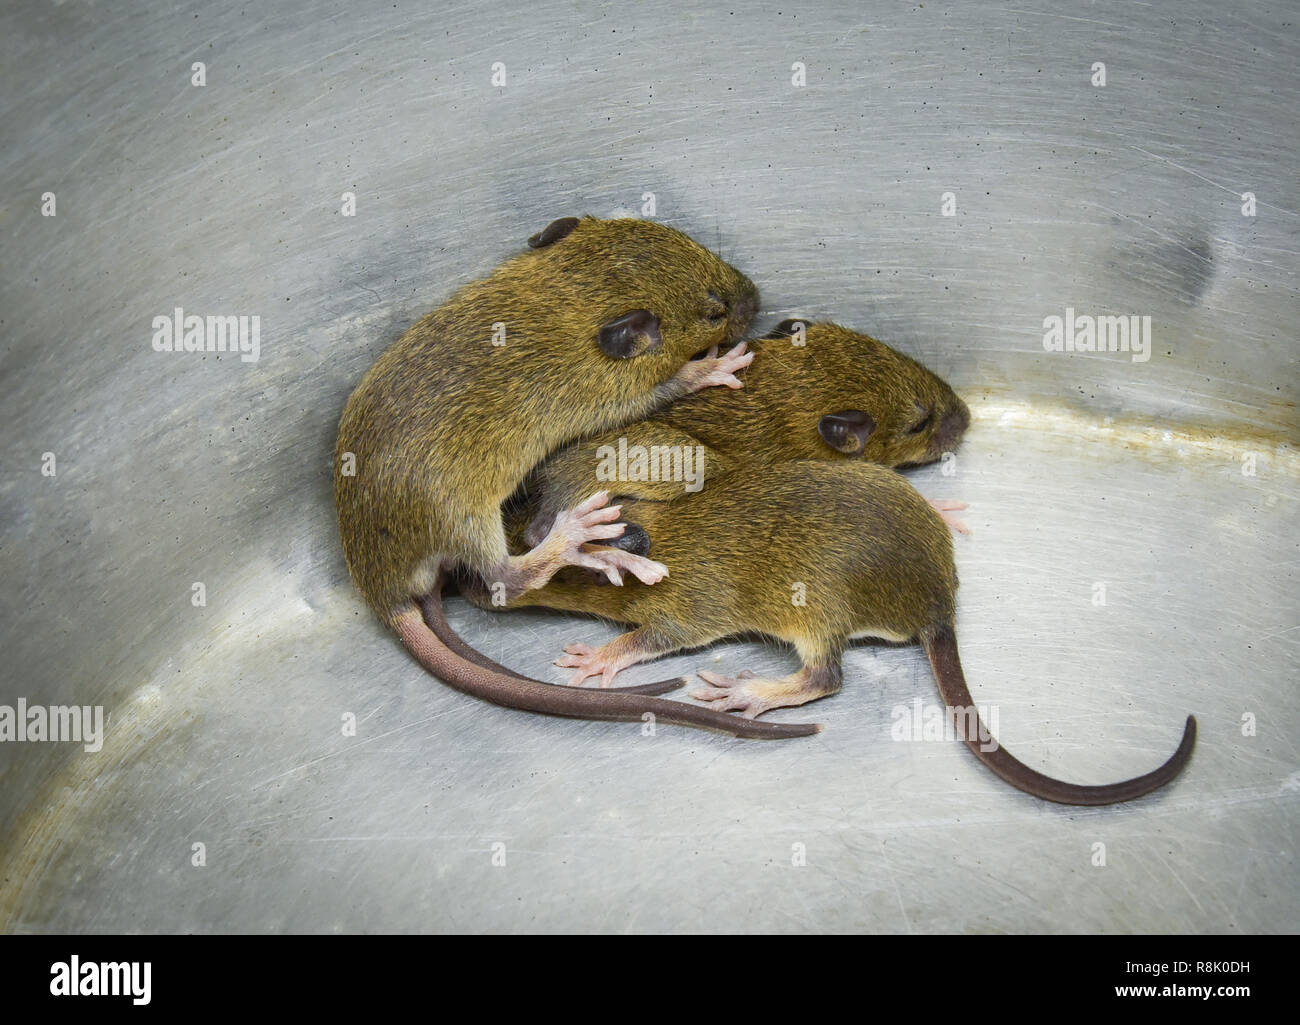 Rat Bebe Banque D Image Et Photos Alamy